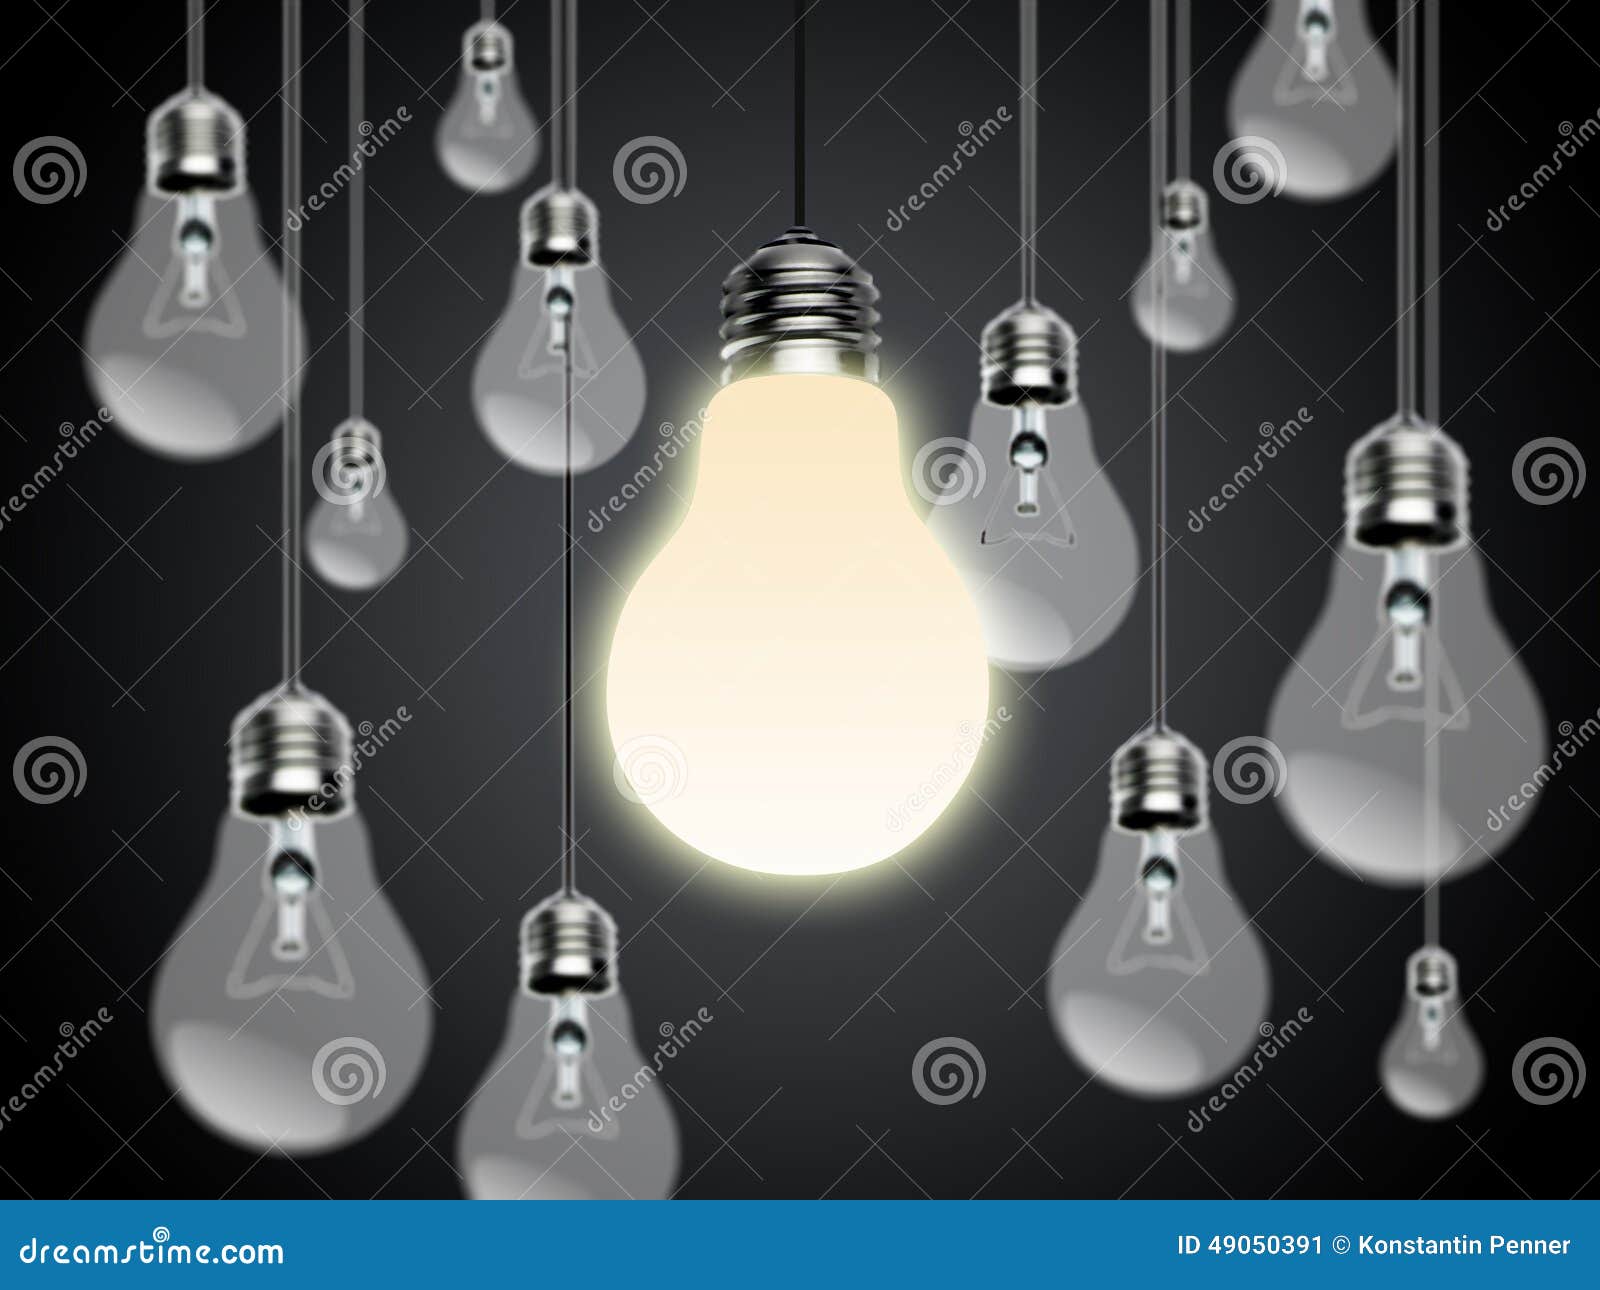 light bulbs with idea conzept